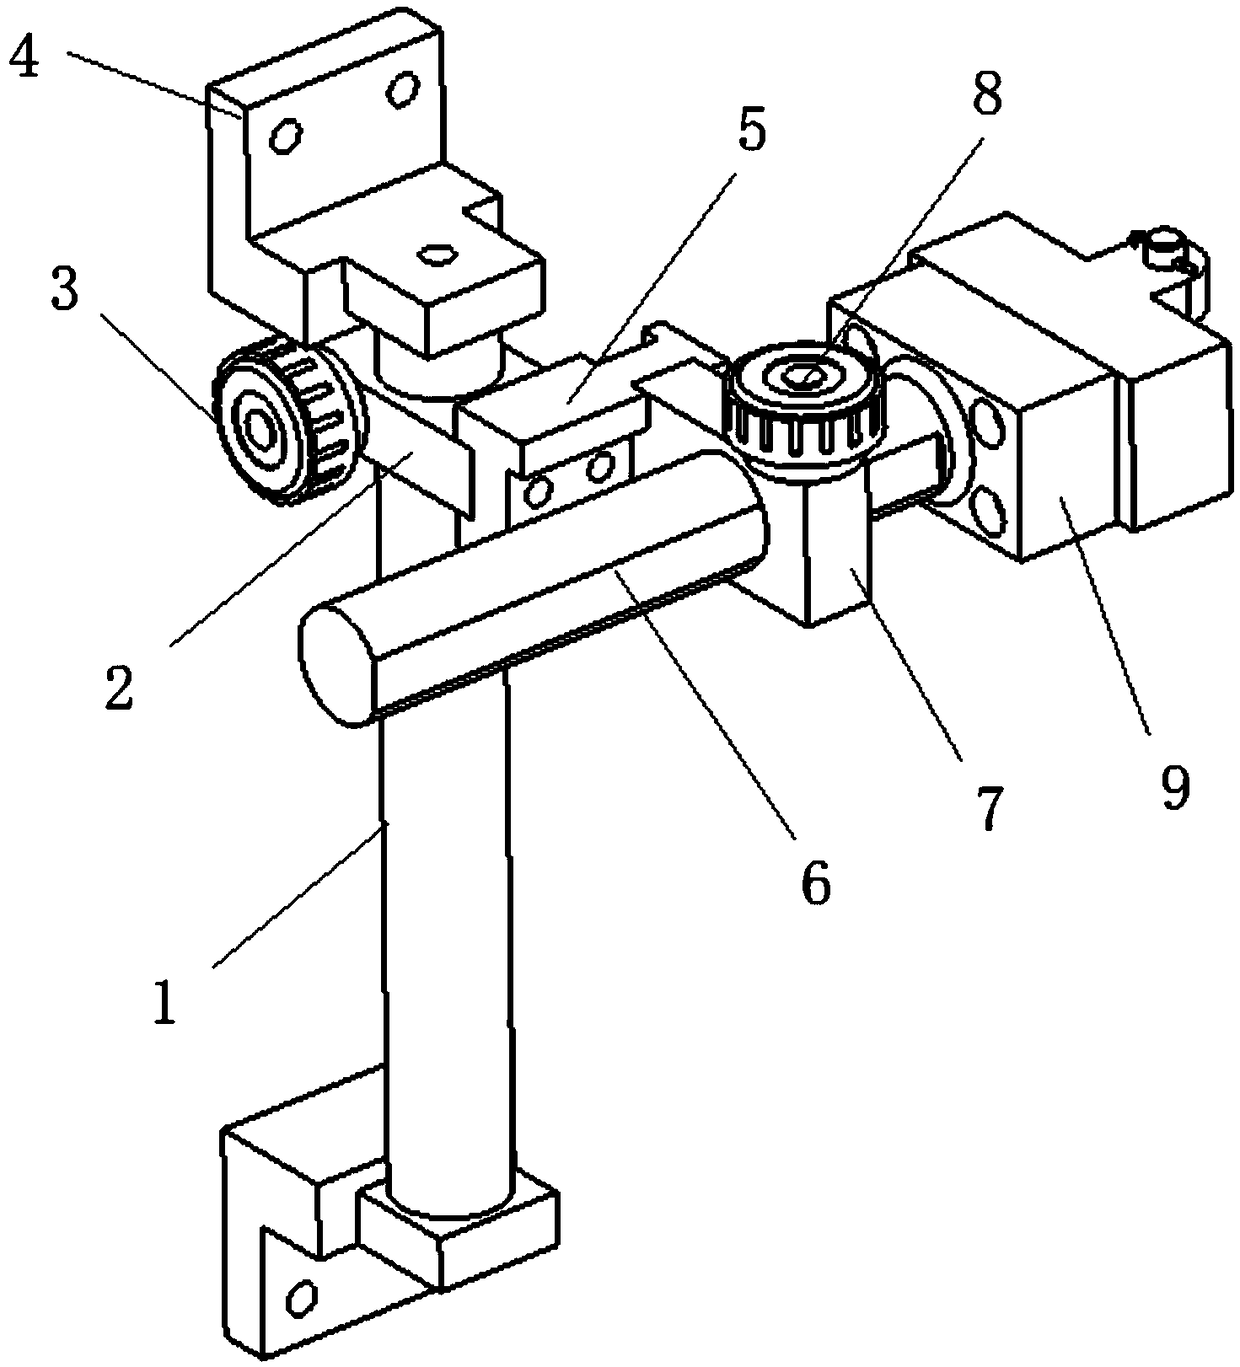 Exoskeleton adjustment mechanism